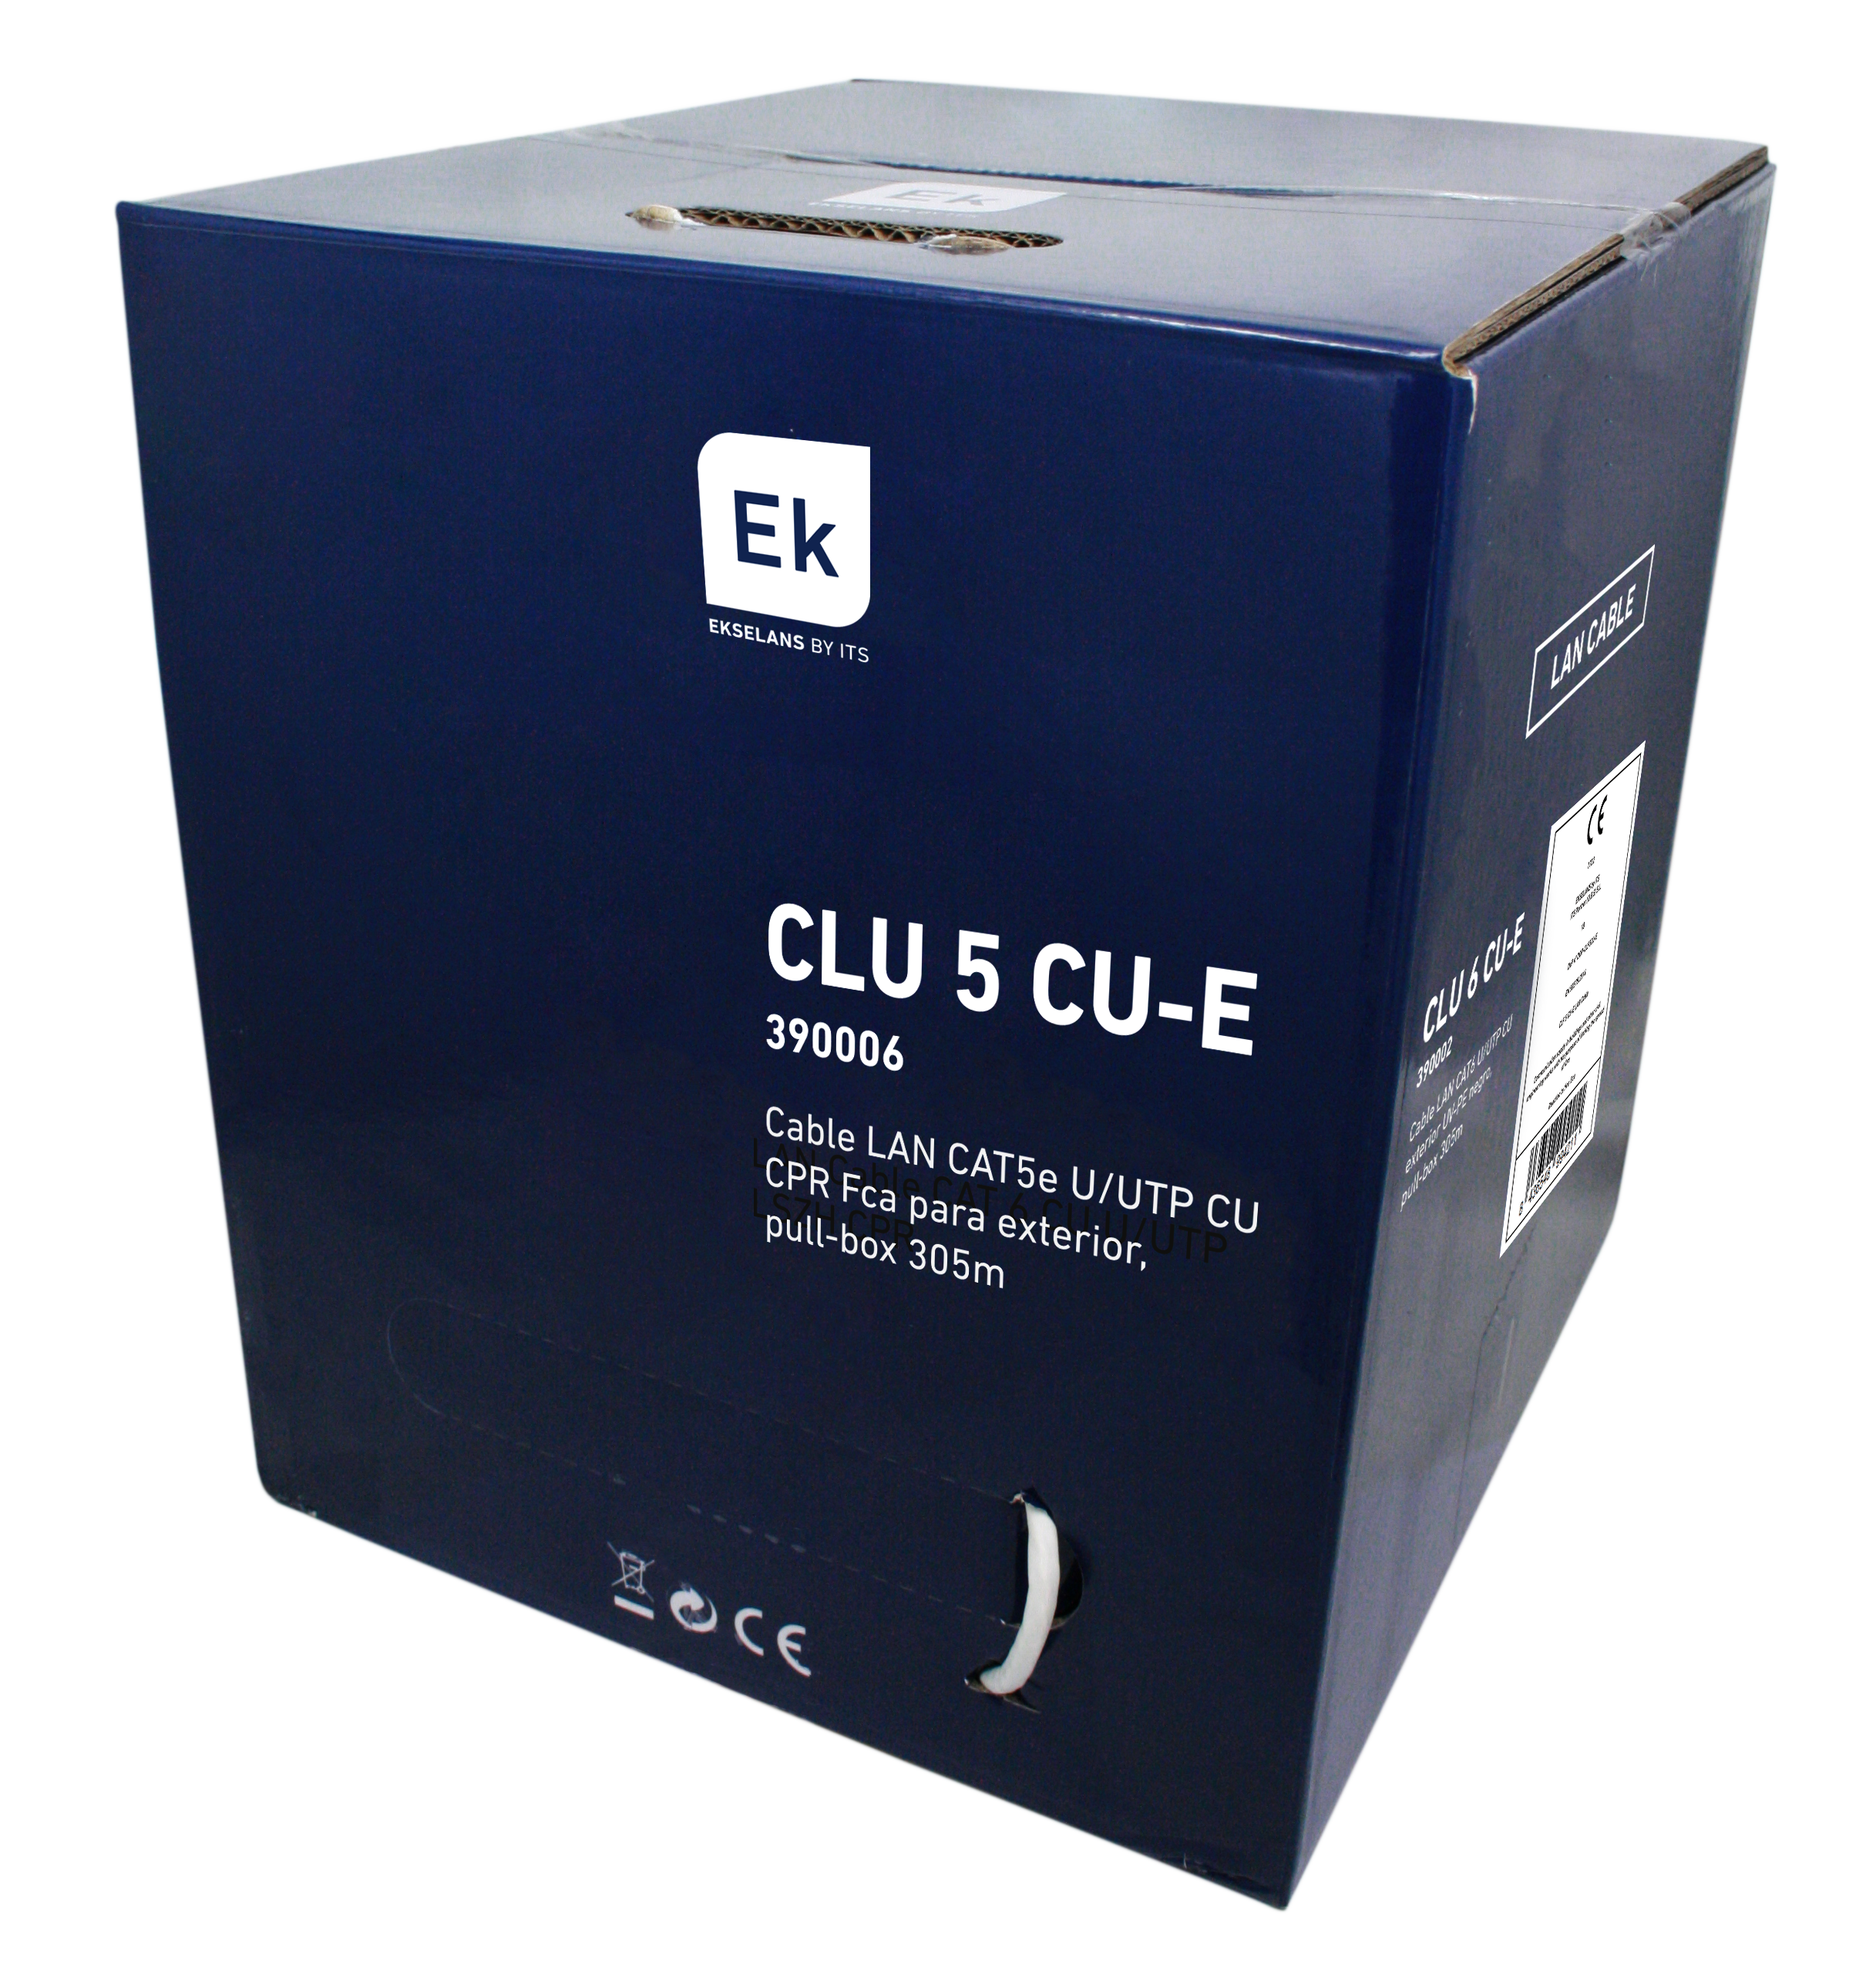 CLU 5CU-E